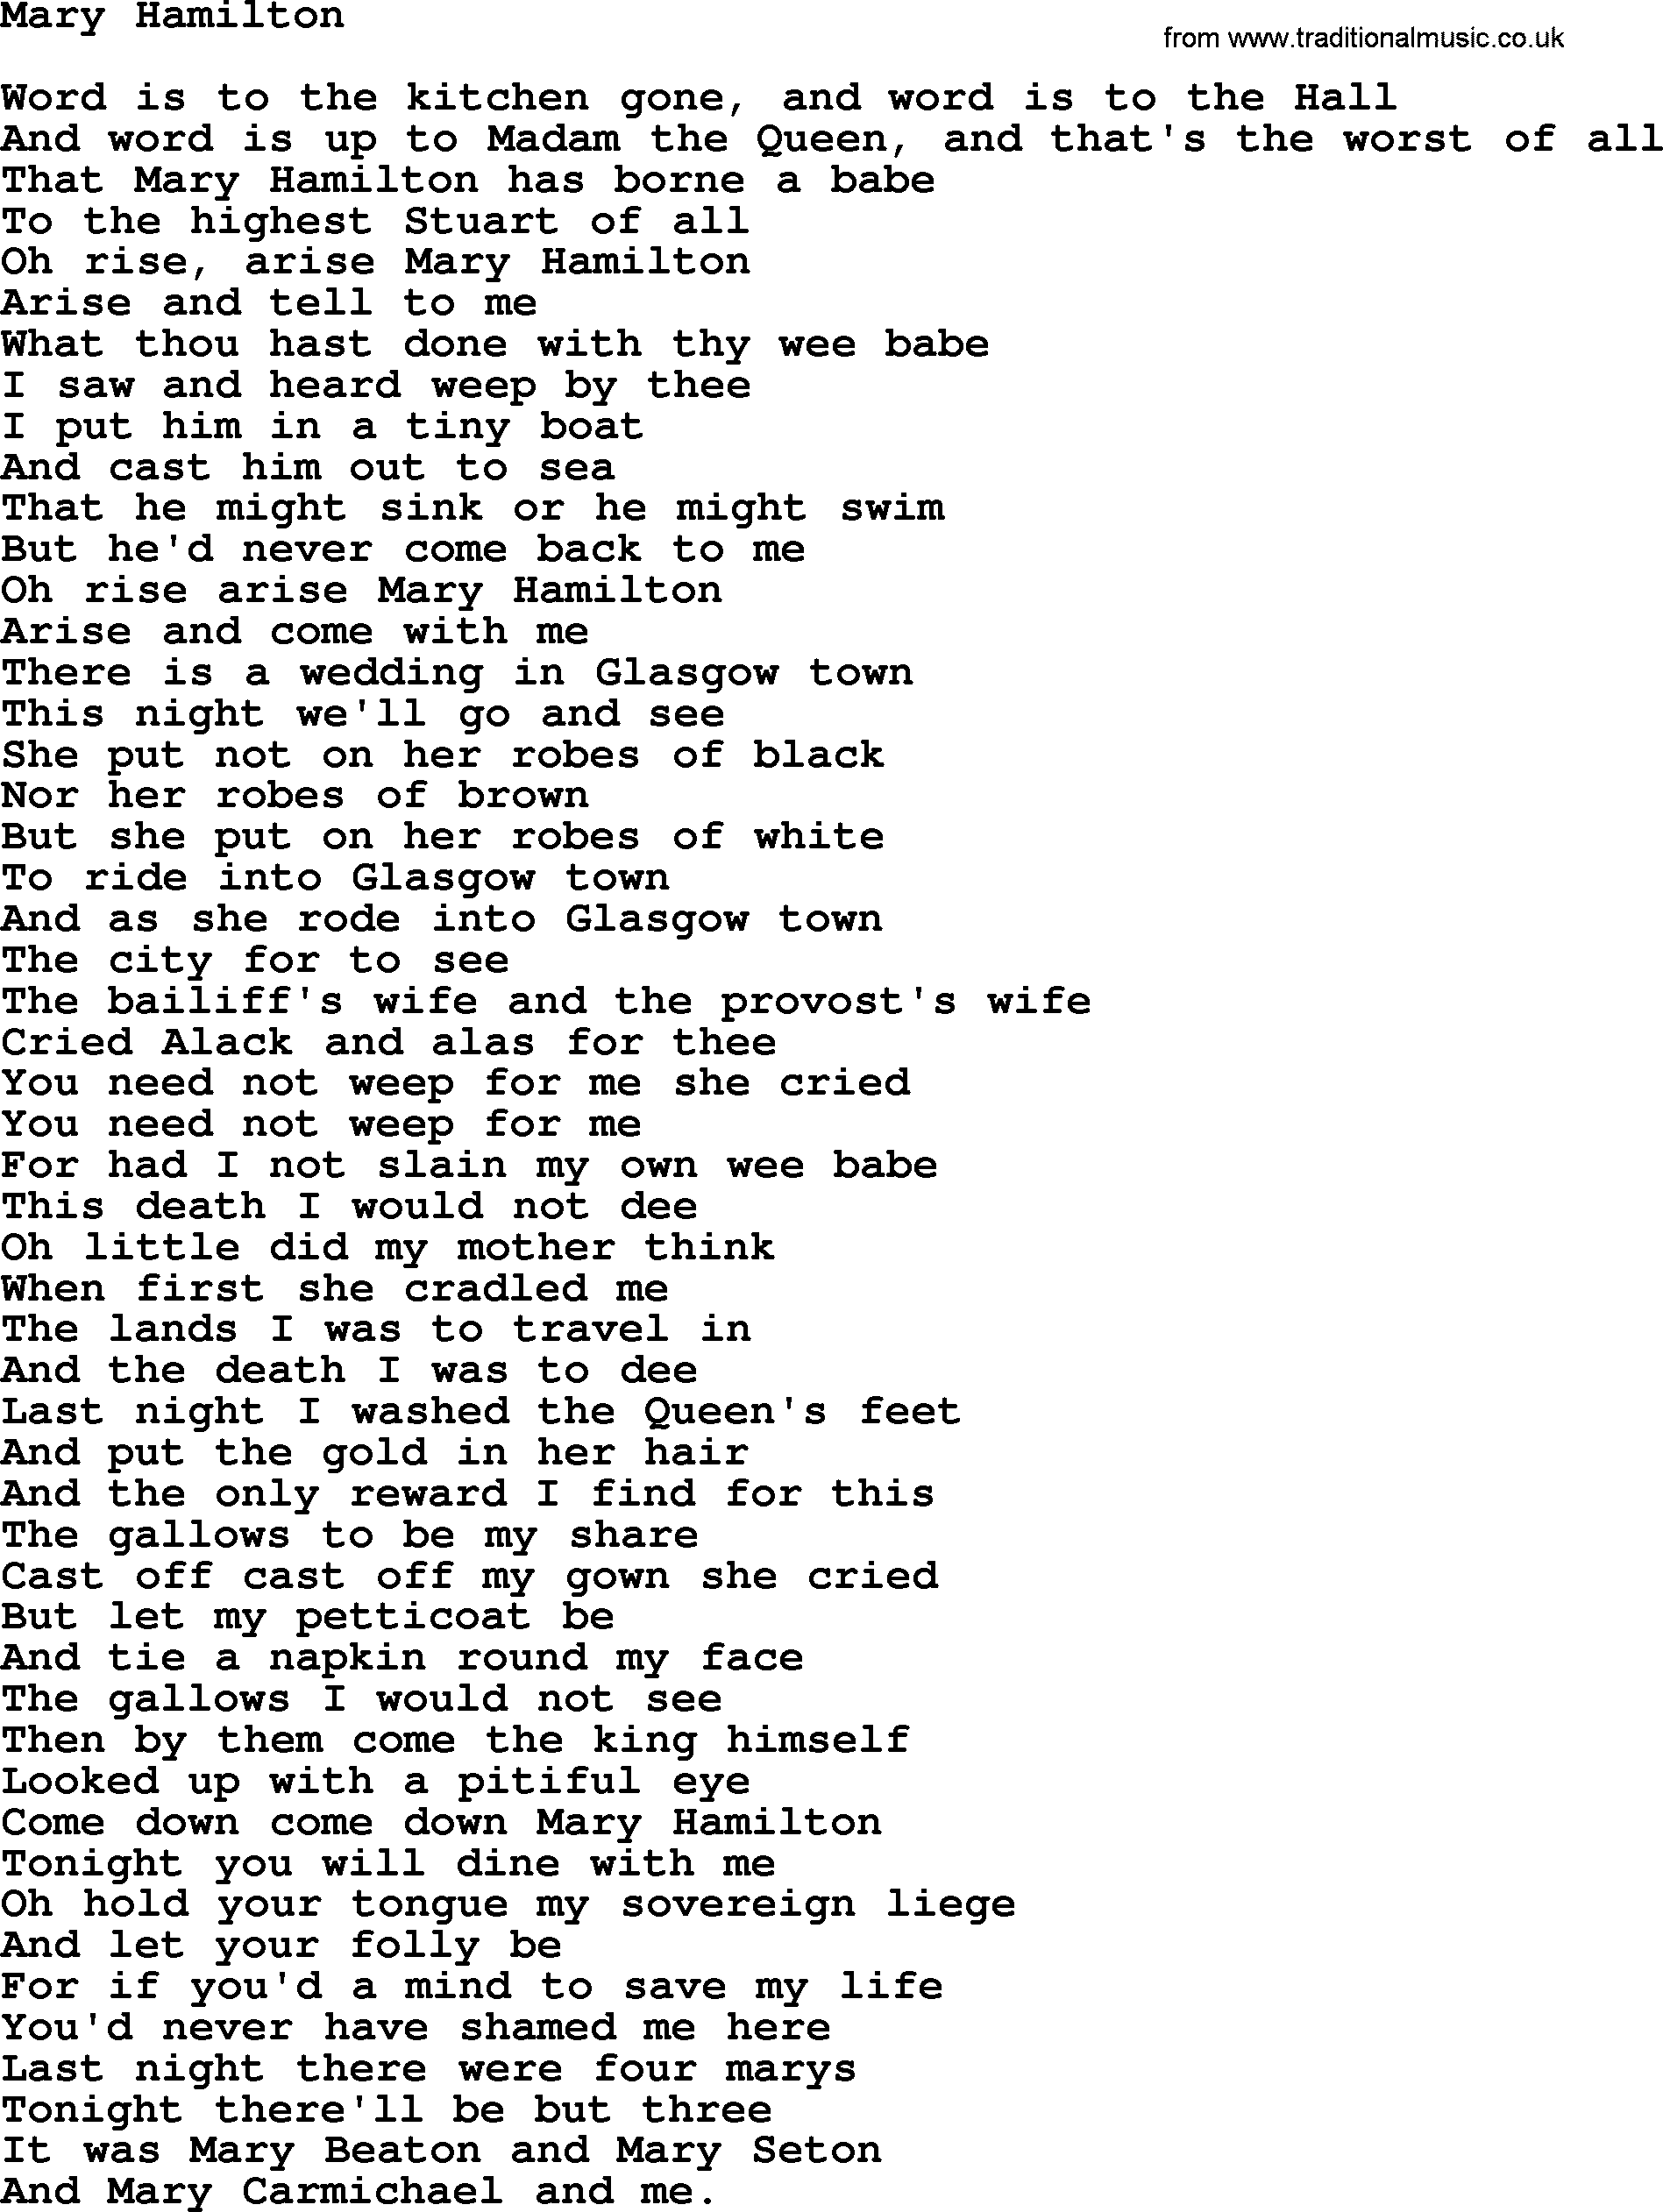 Joan Baez song Mary Hamilton, lyrics